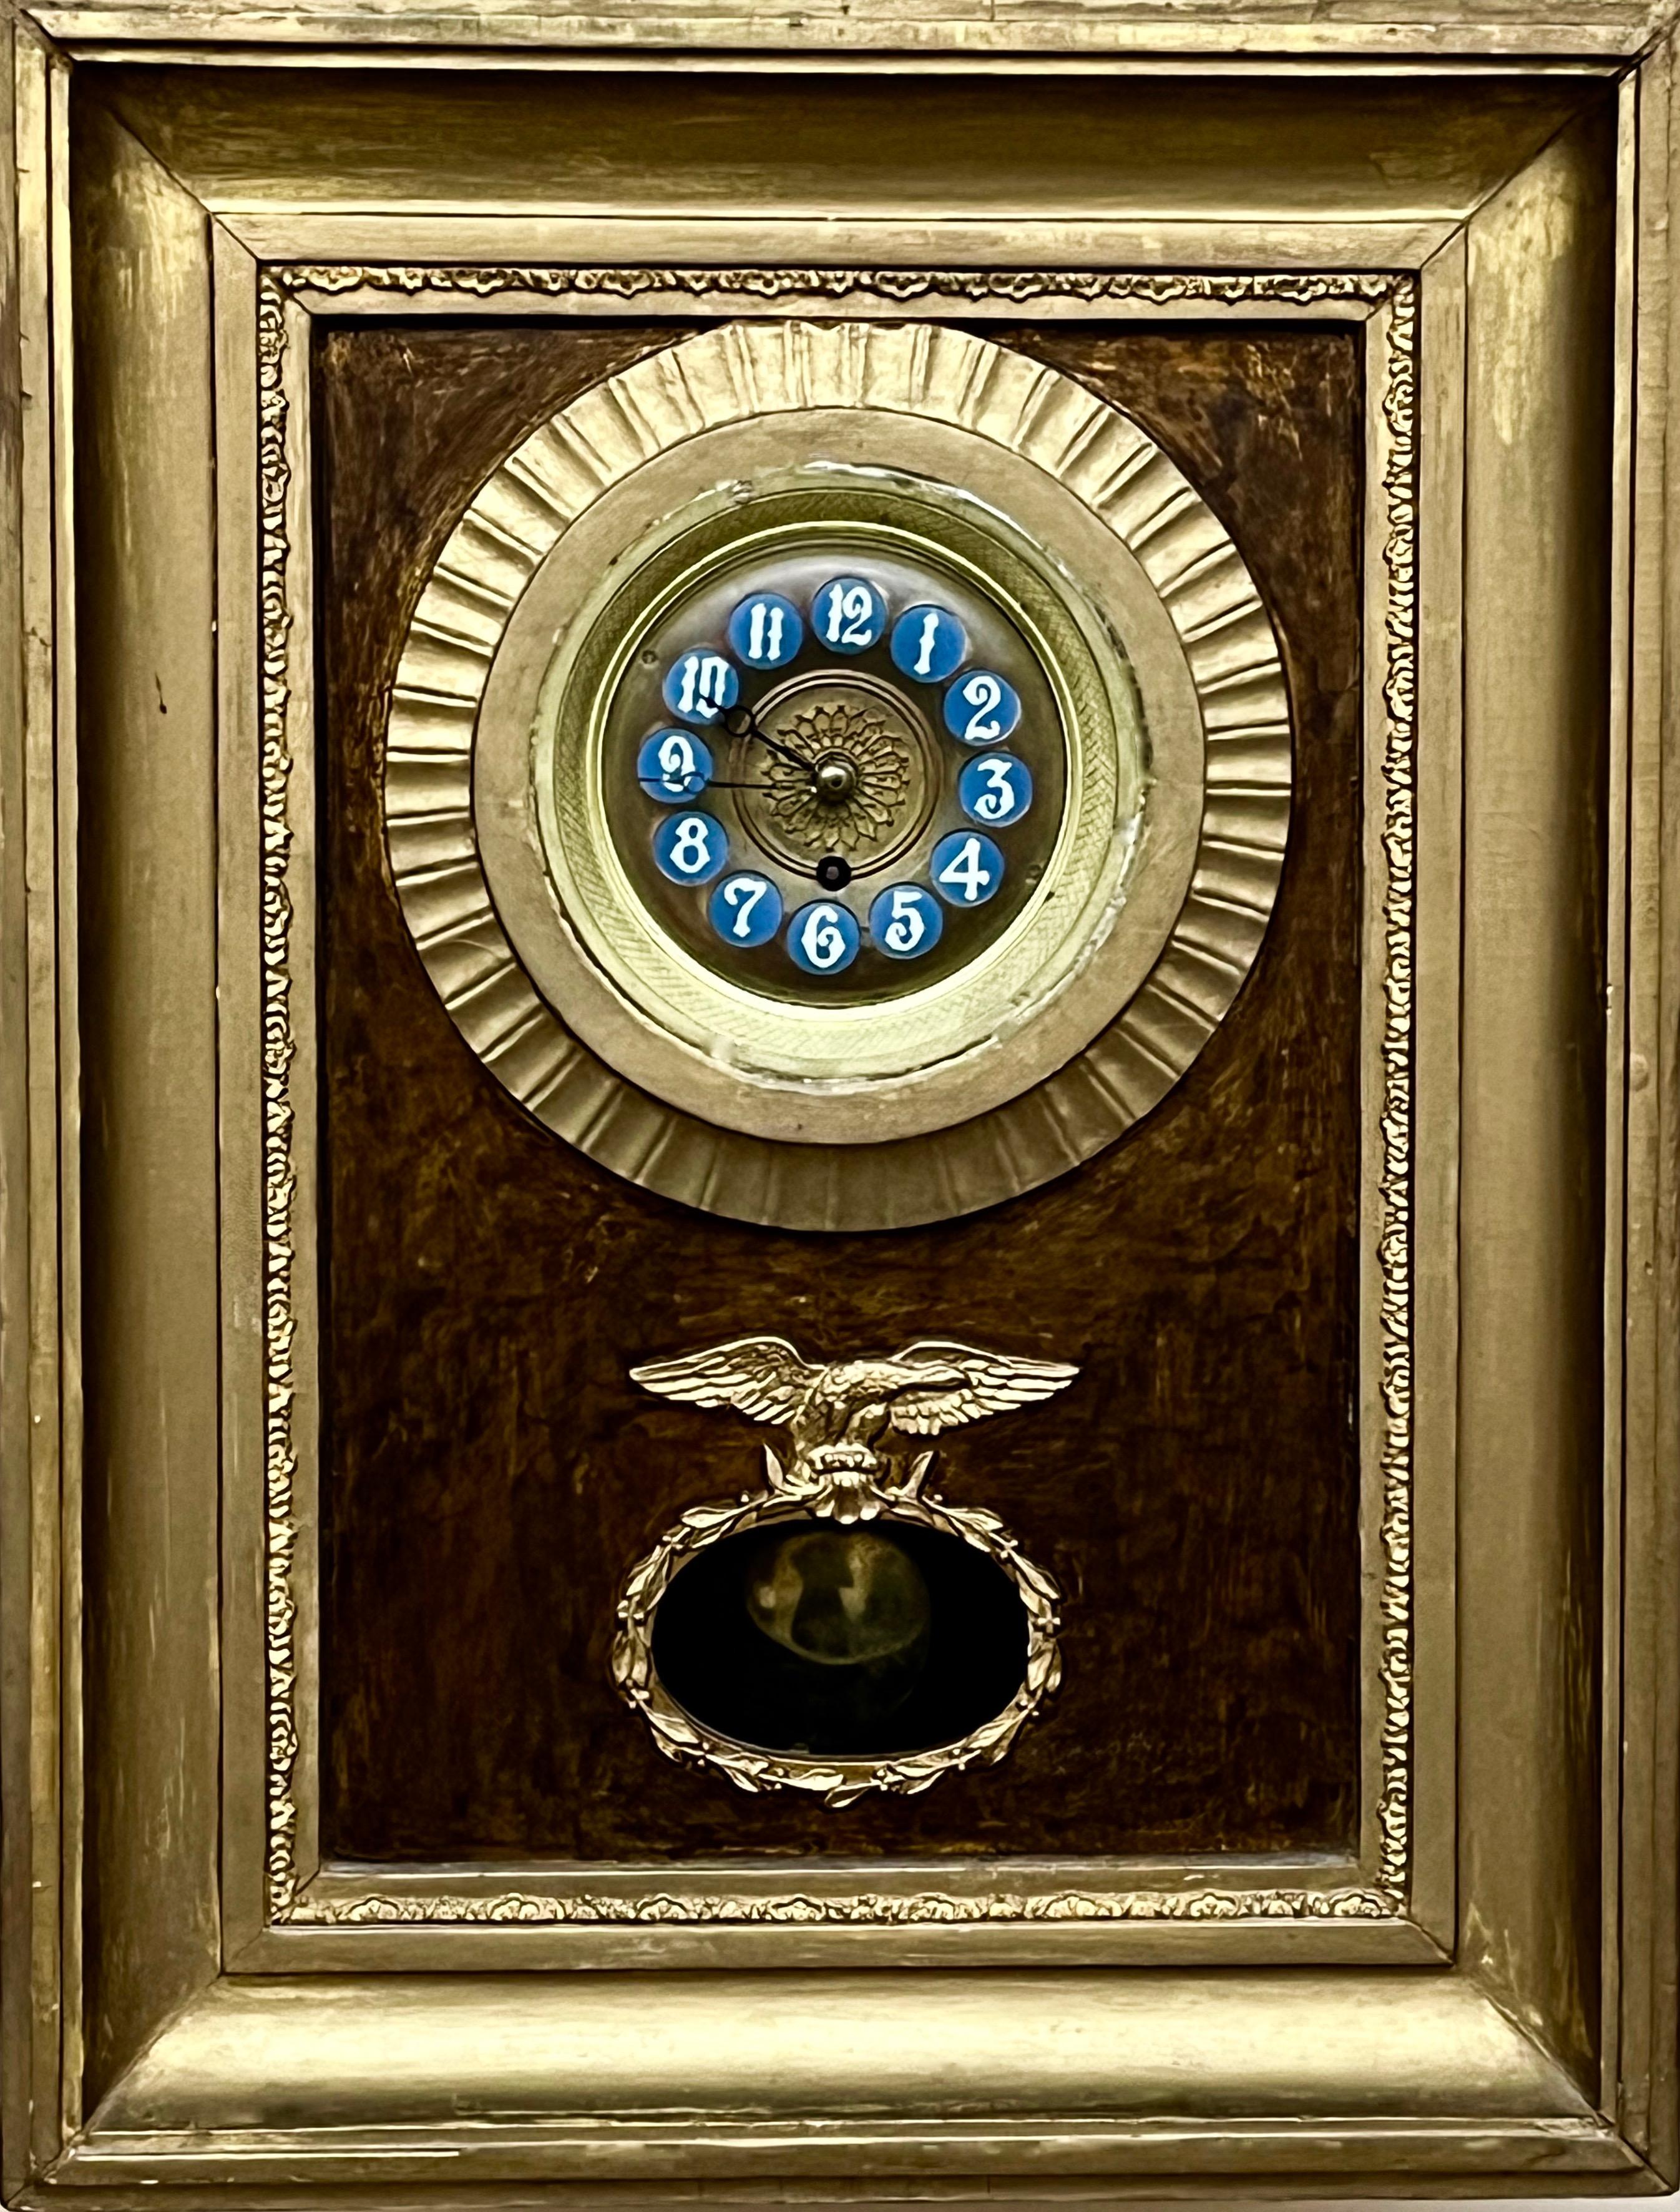 Dekoracyjny zegar ścienny w obrazowej ramie